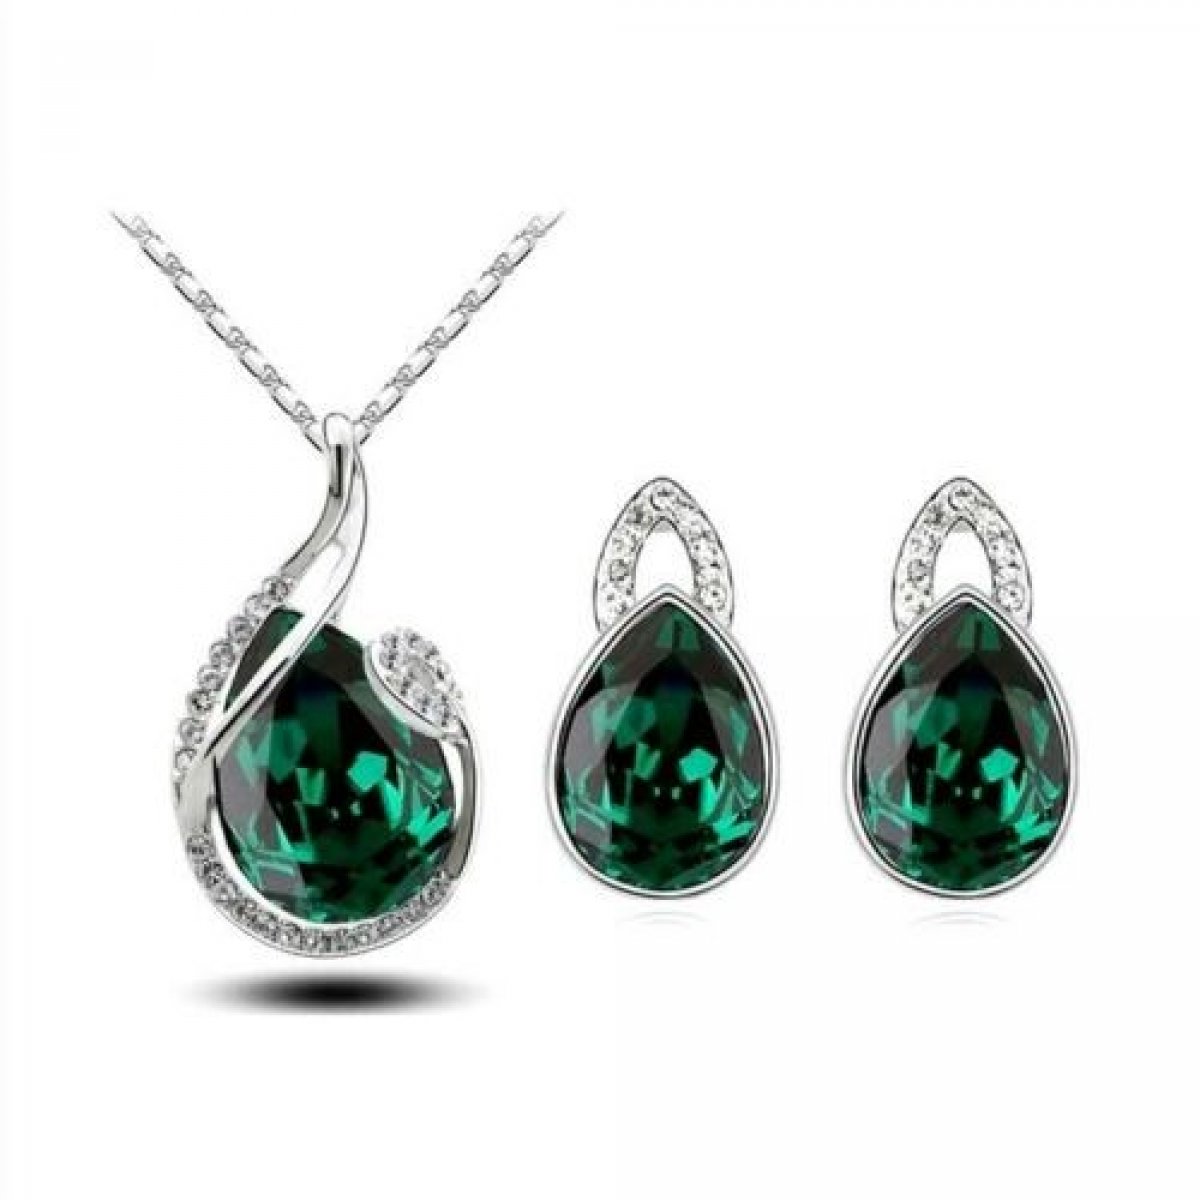 Parure bijoux argenté - Cristal clair et vert emeraude